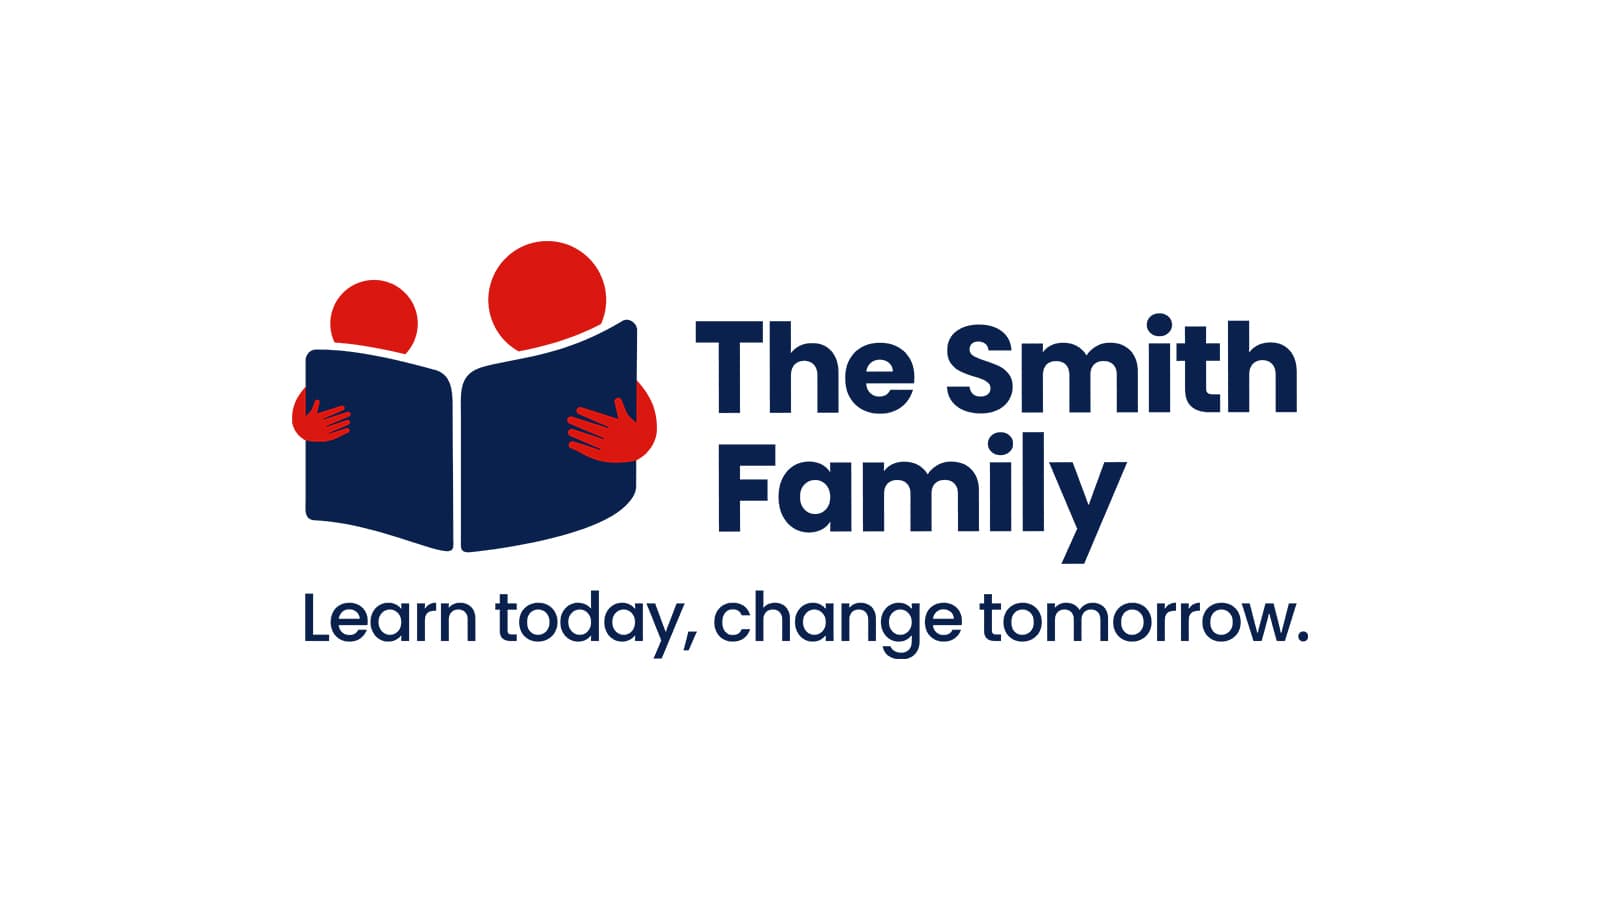 www.thesmithfamily.com.au